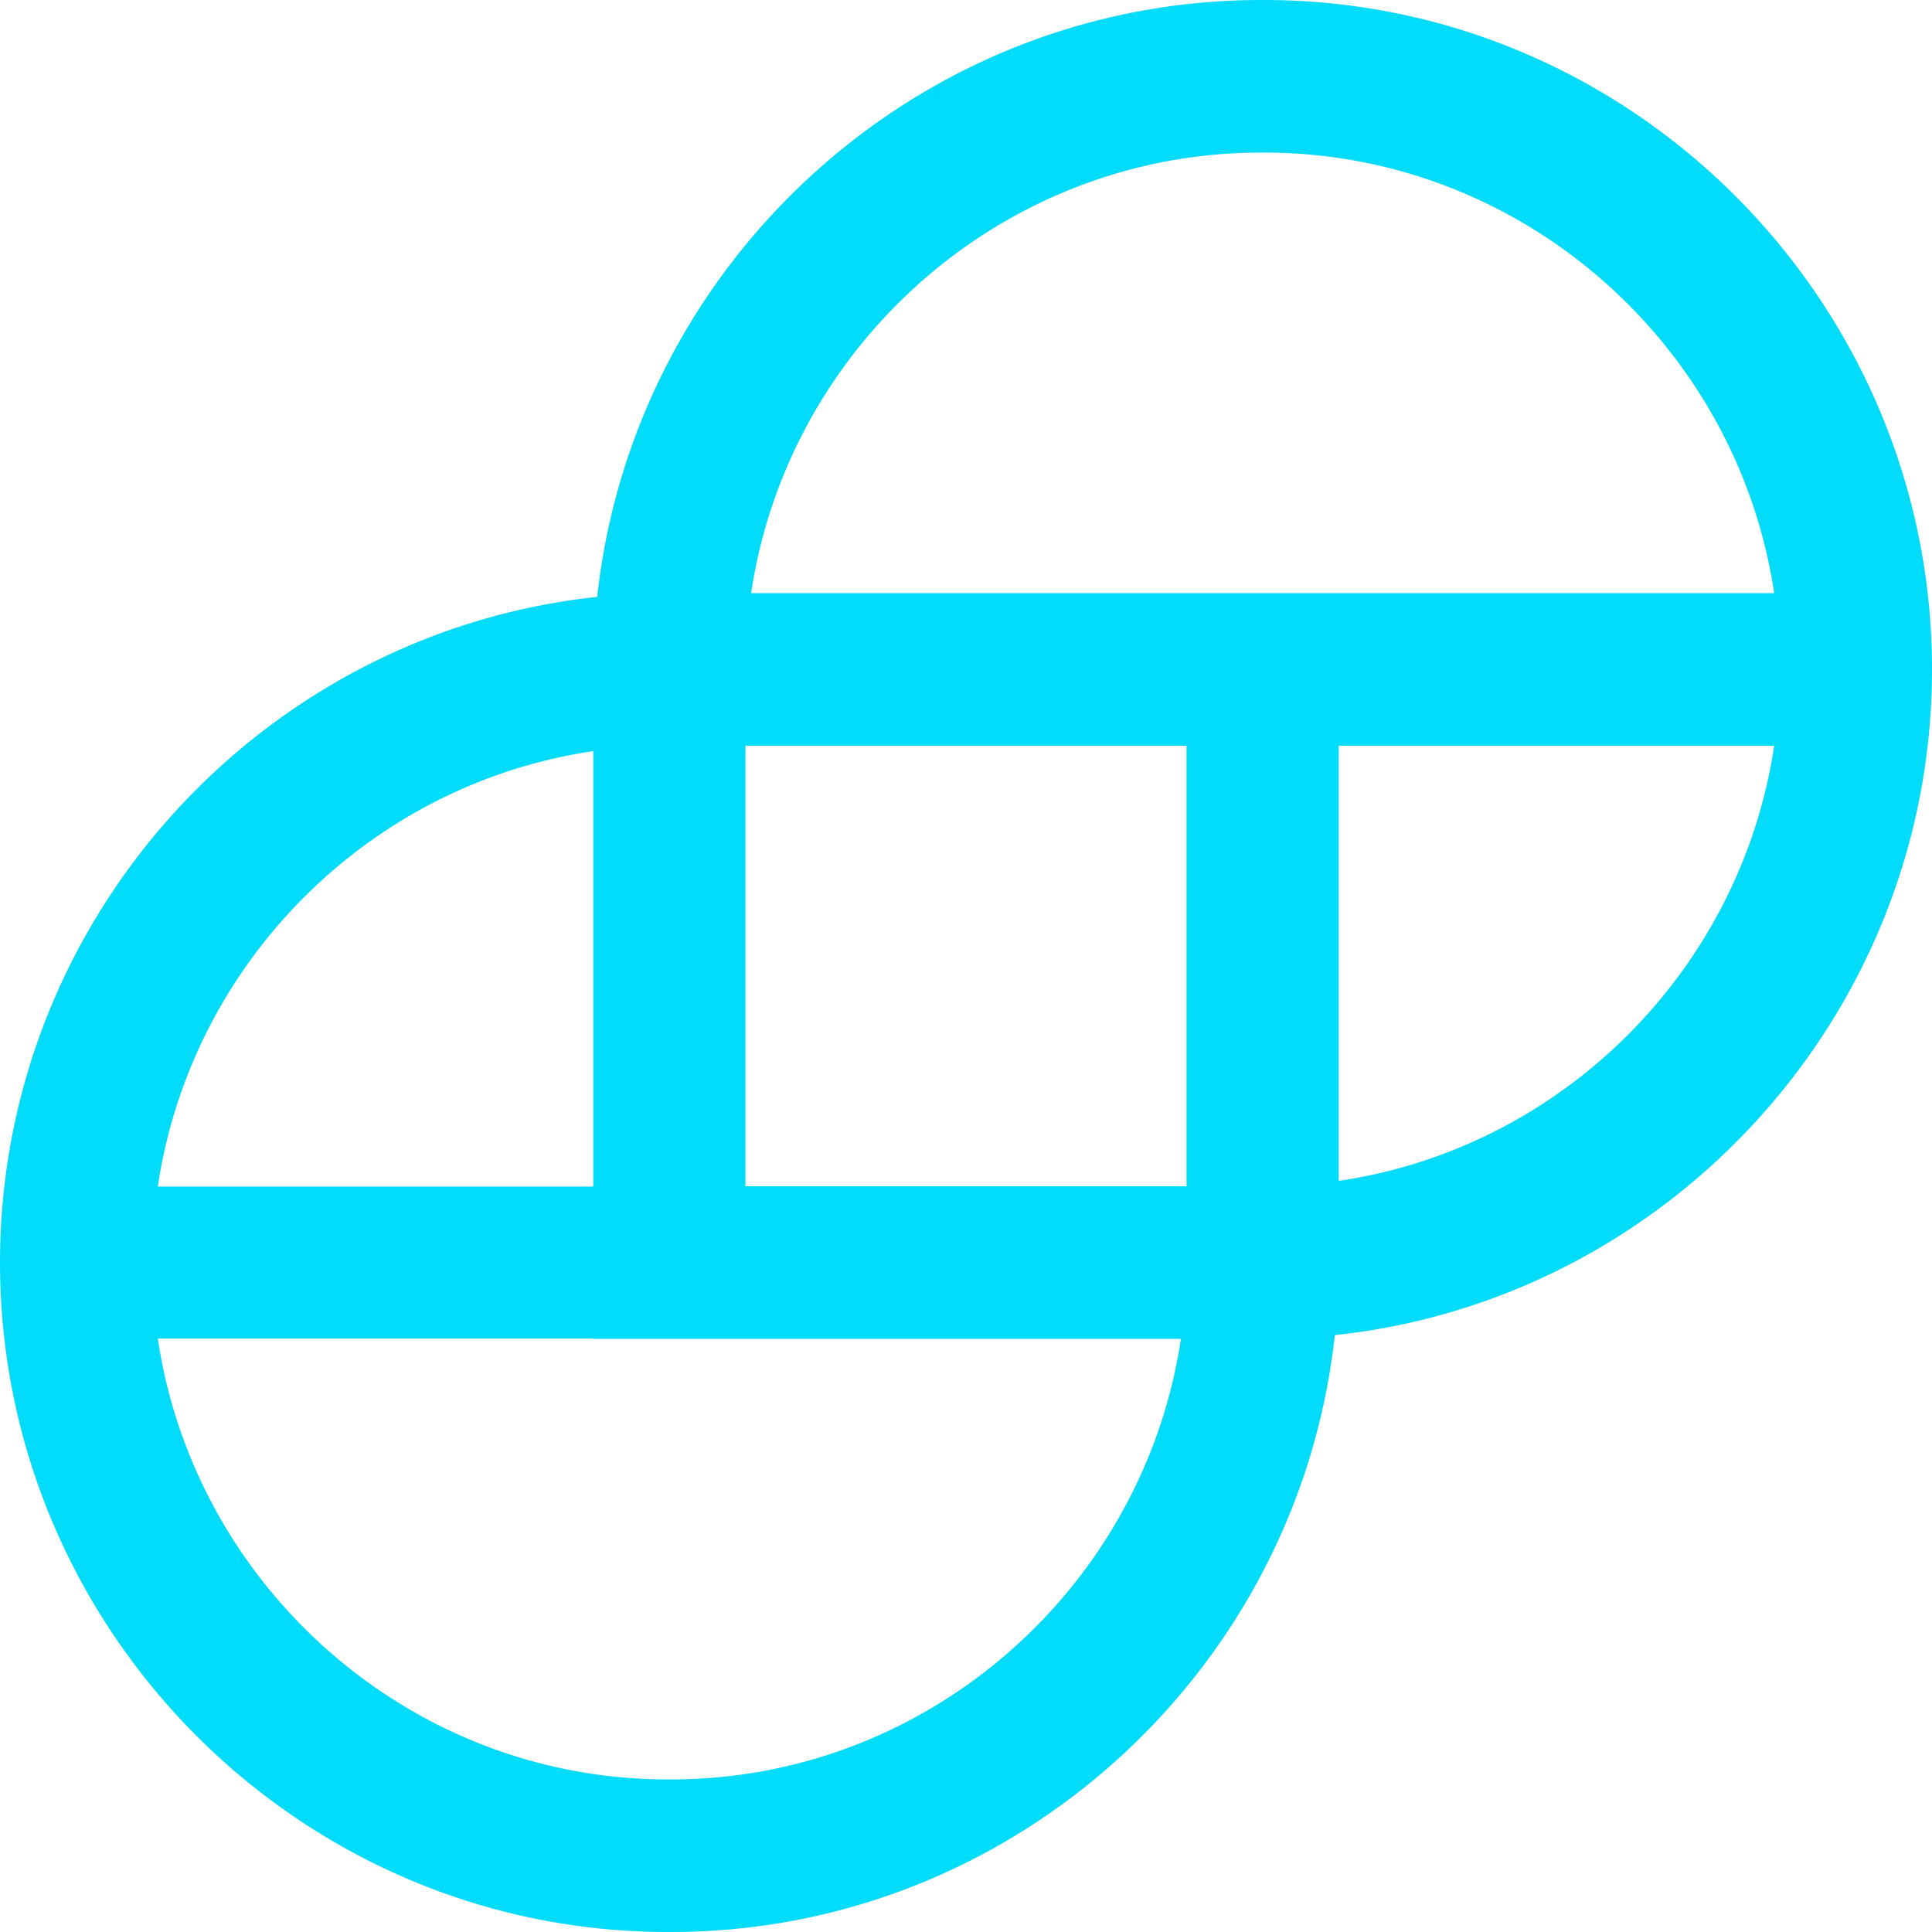 Gemini cryptocurrency exchange logo фотография Stock | Adobe Stock